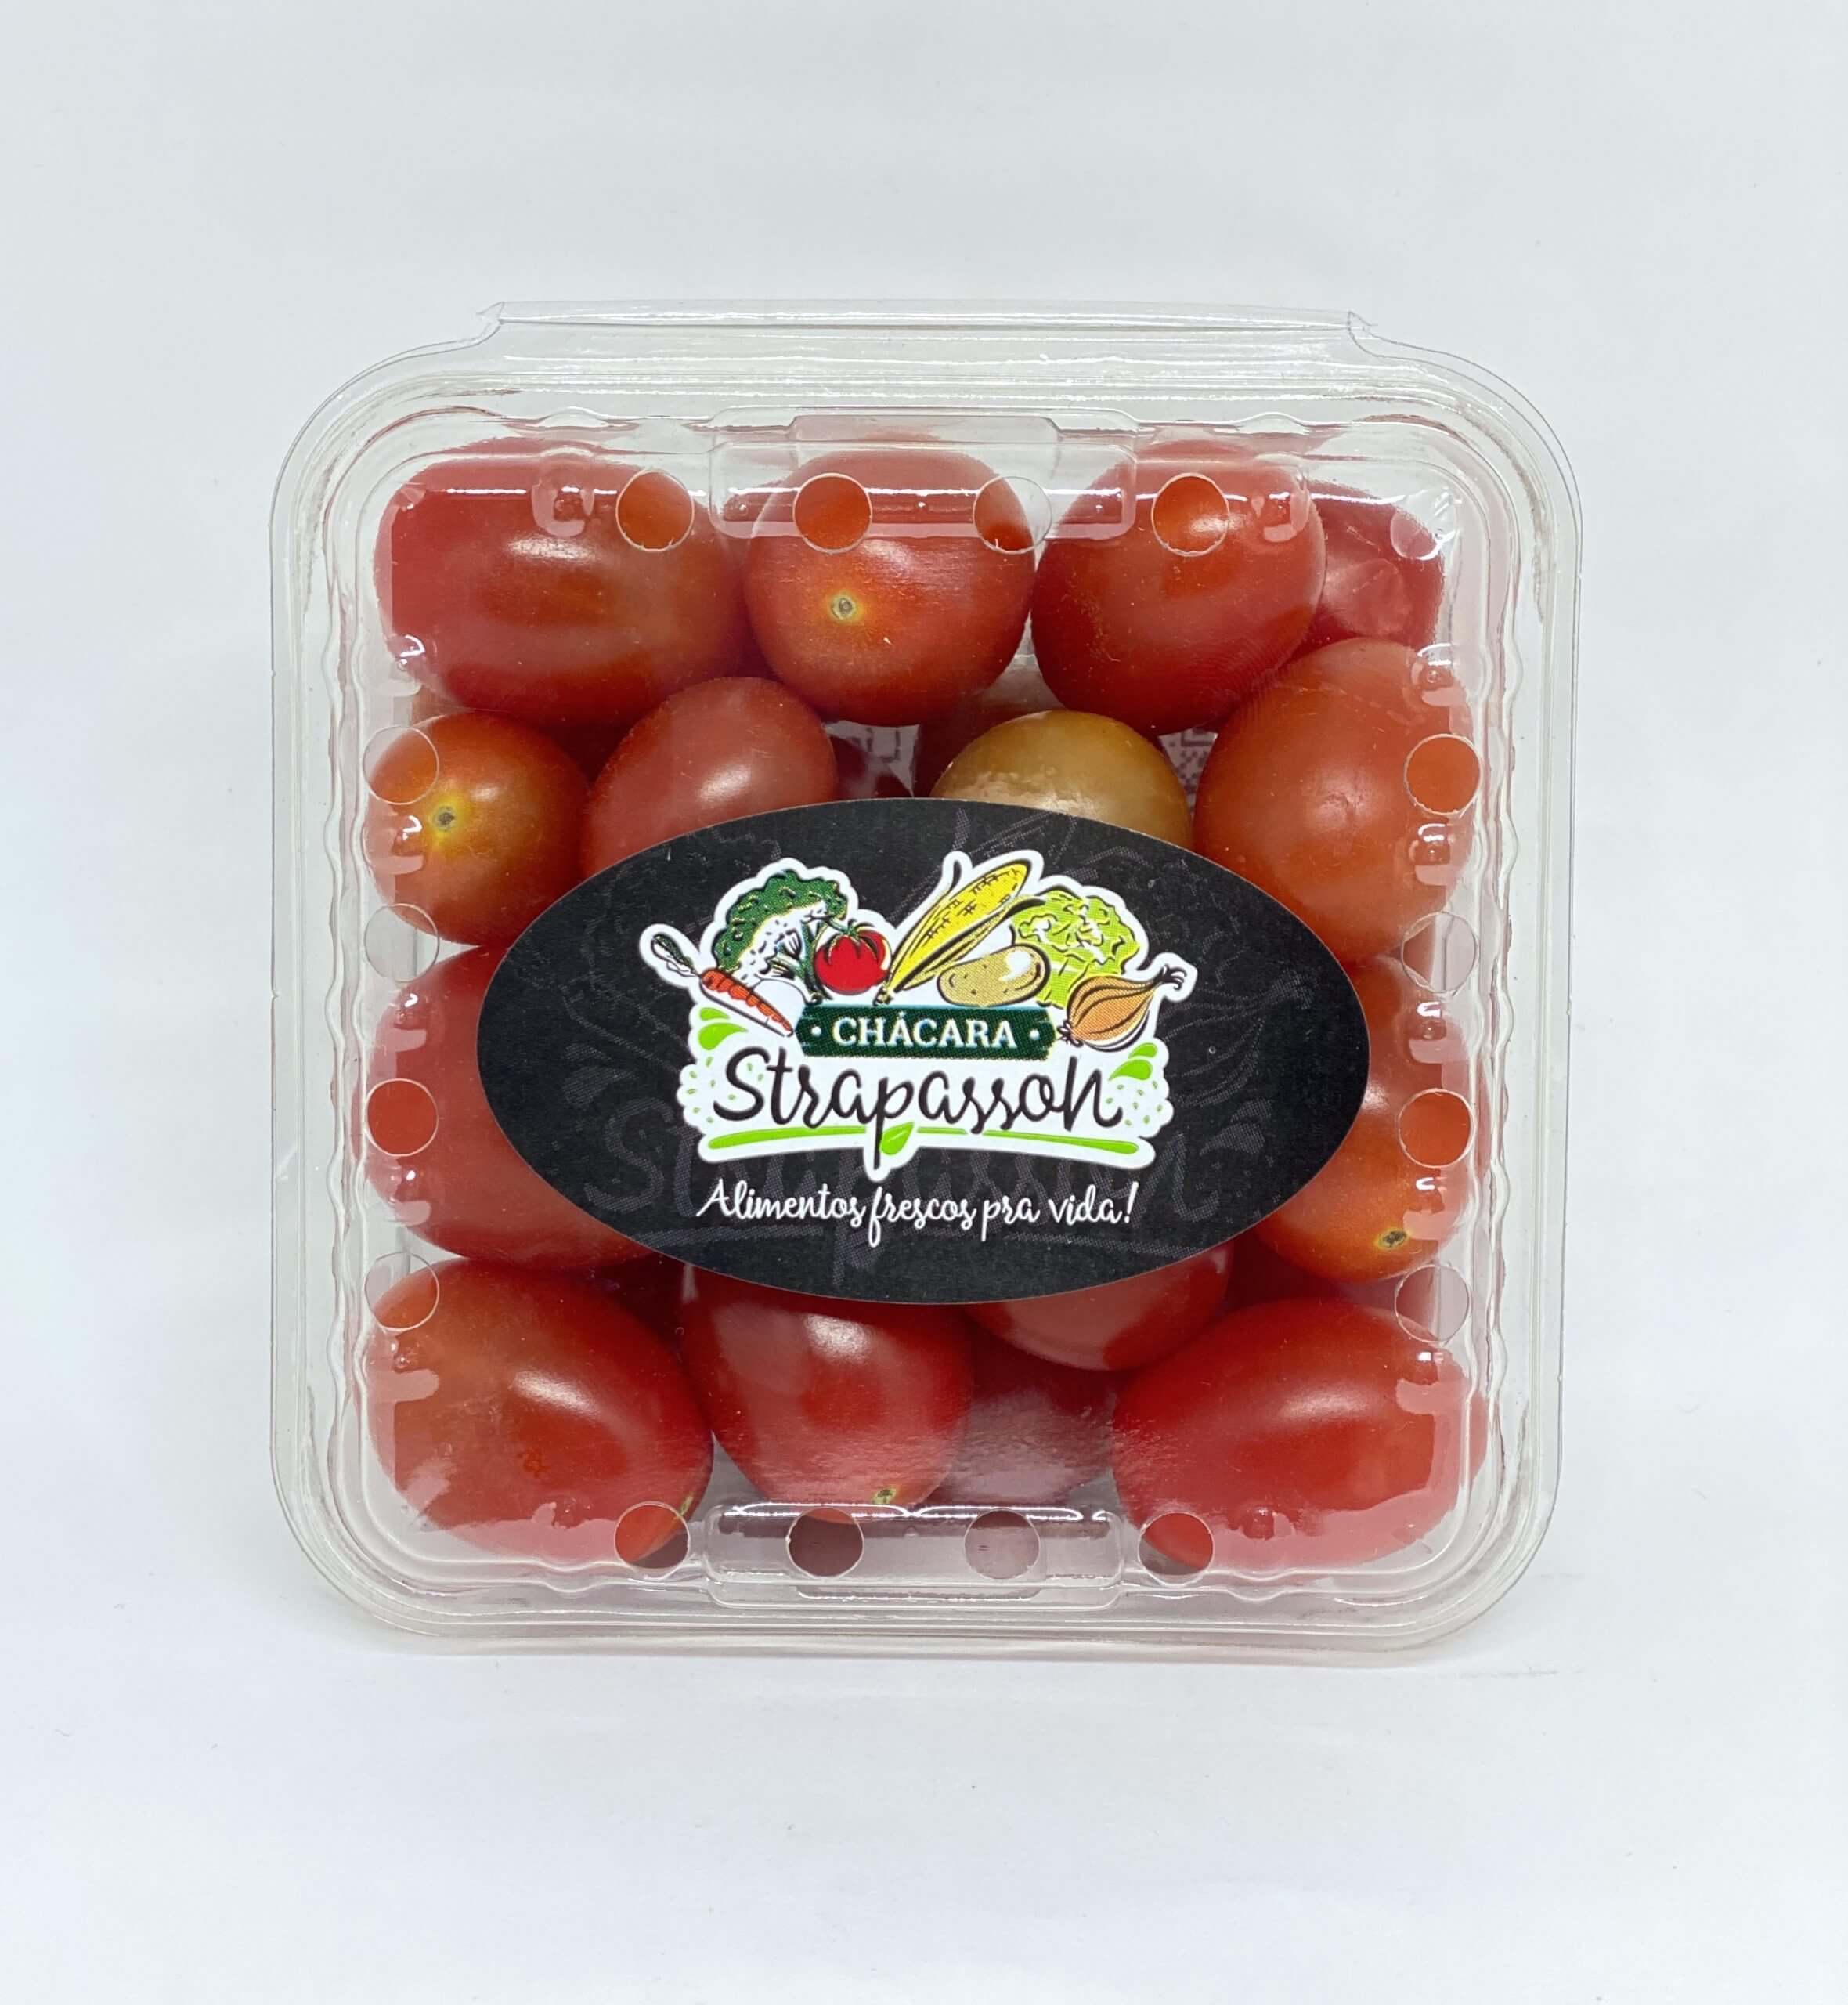 Tomate Cereja (Bdj 200g)